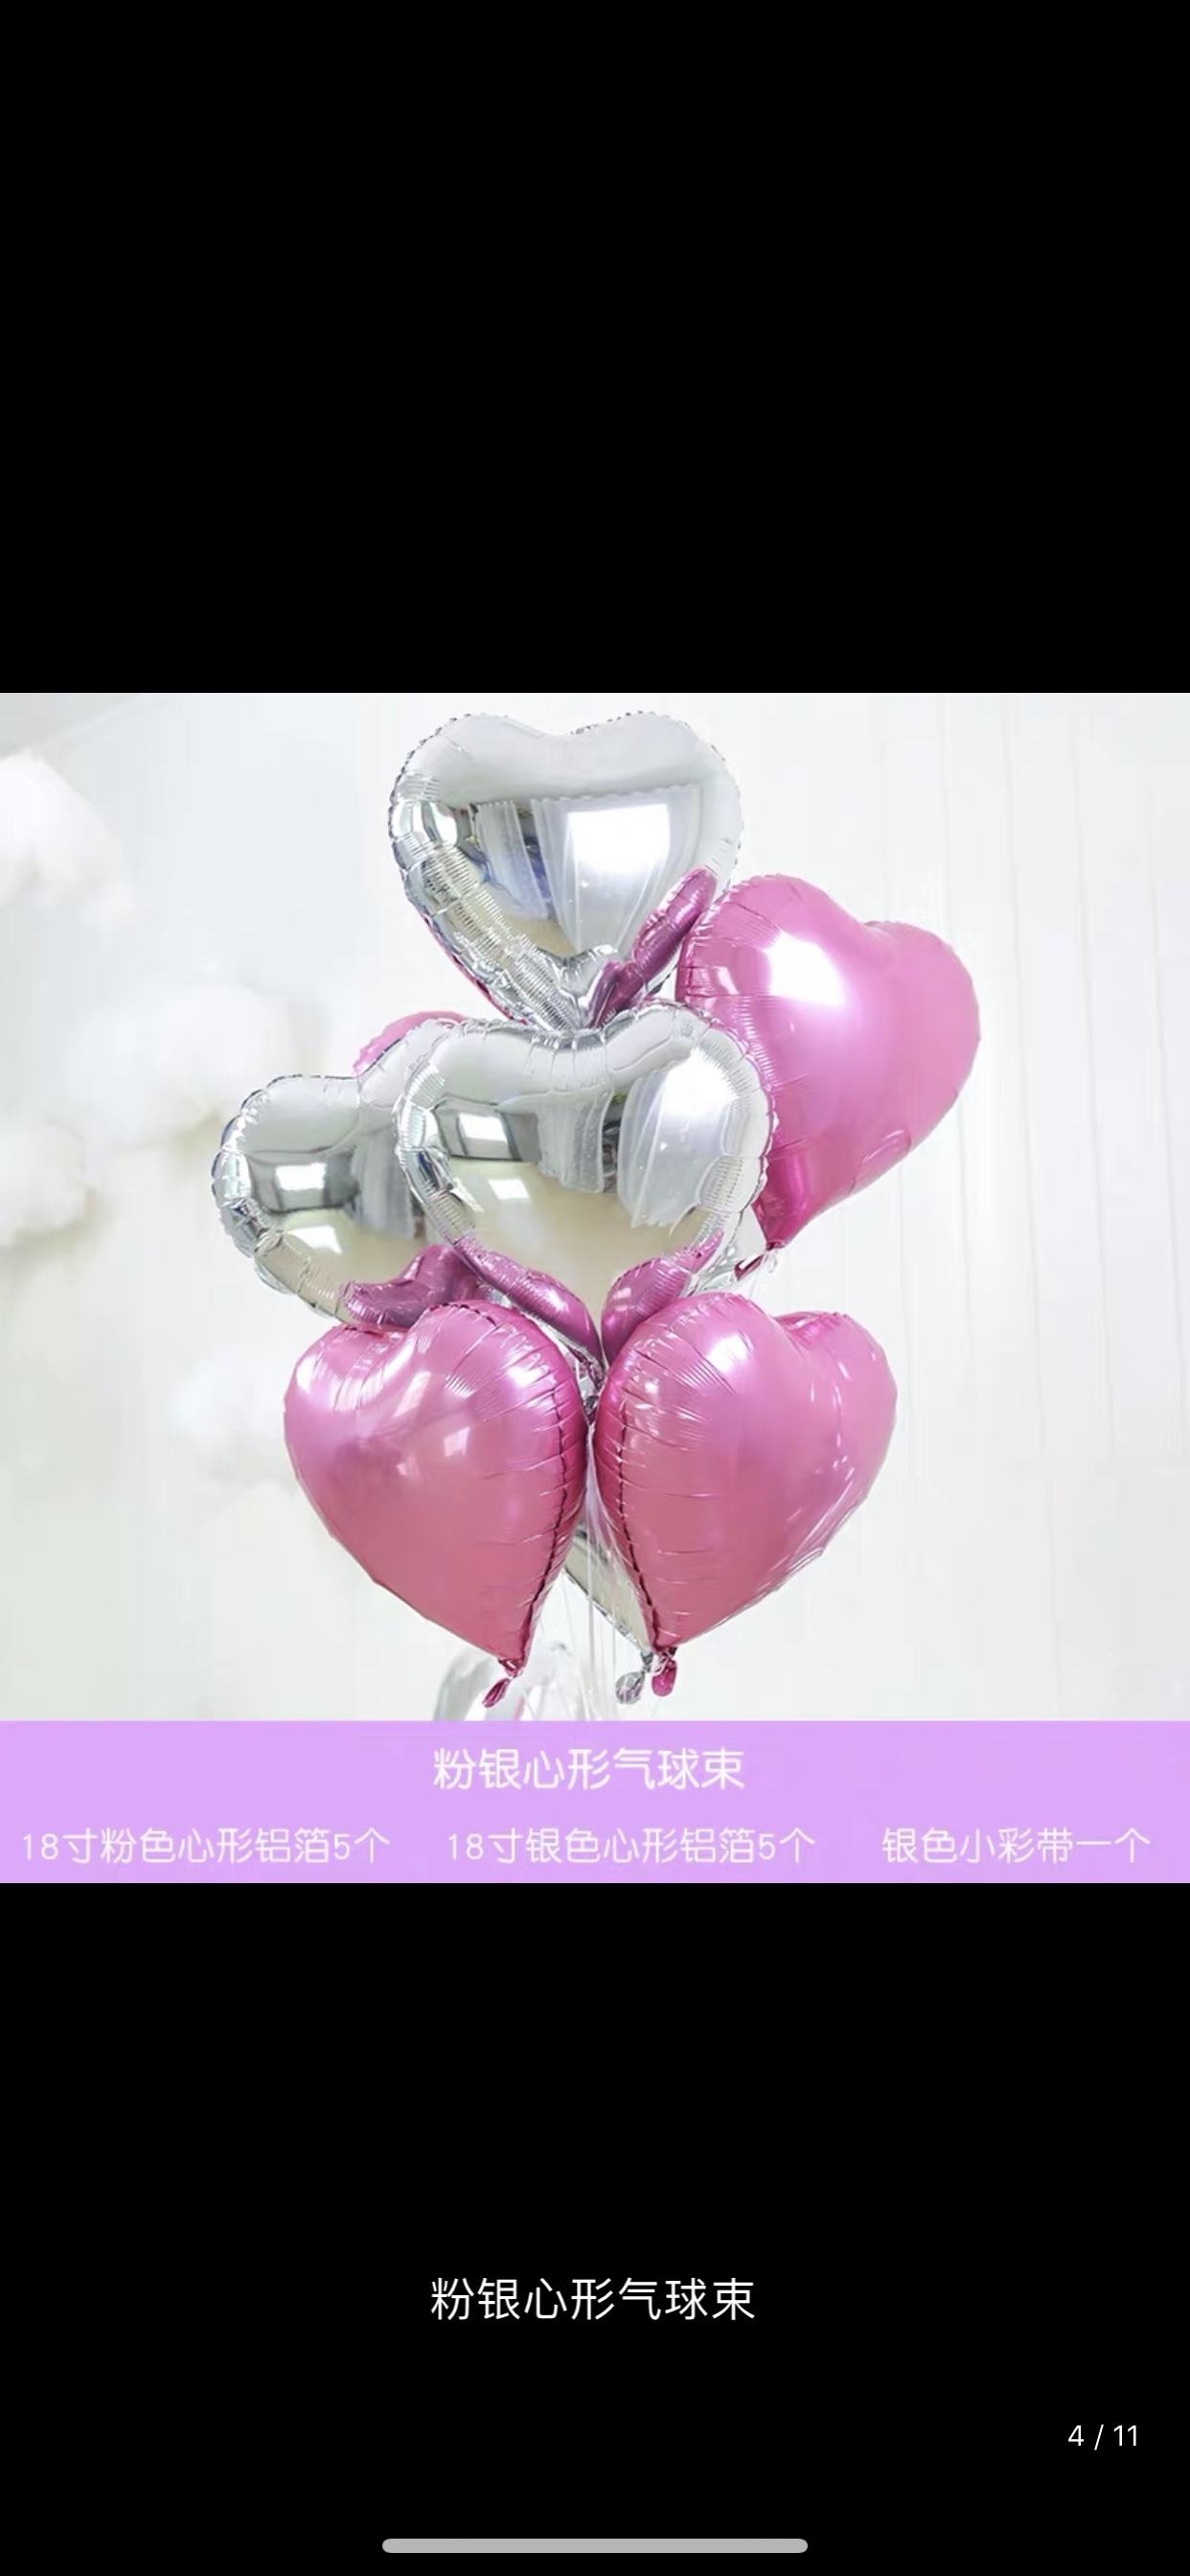 铝膜气球 18寸心形组装8件套装 各种派对节日生日婚庆房间装饰用品 1212店 可订做详情图3